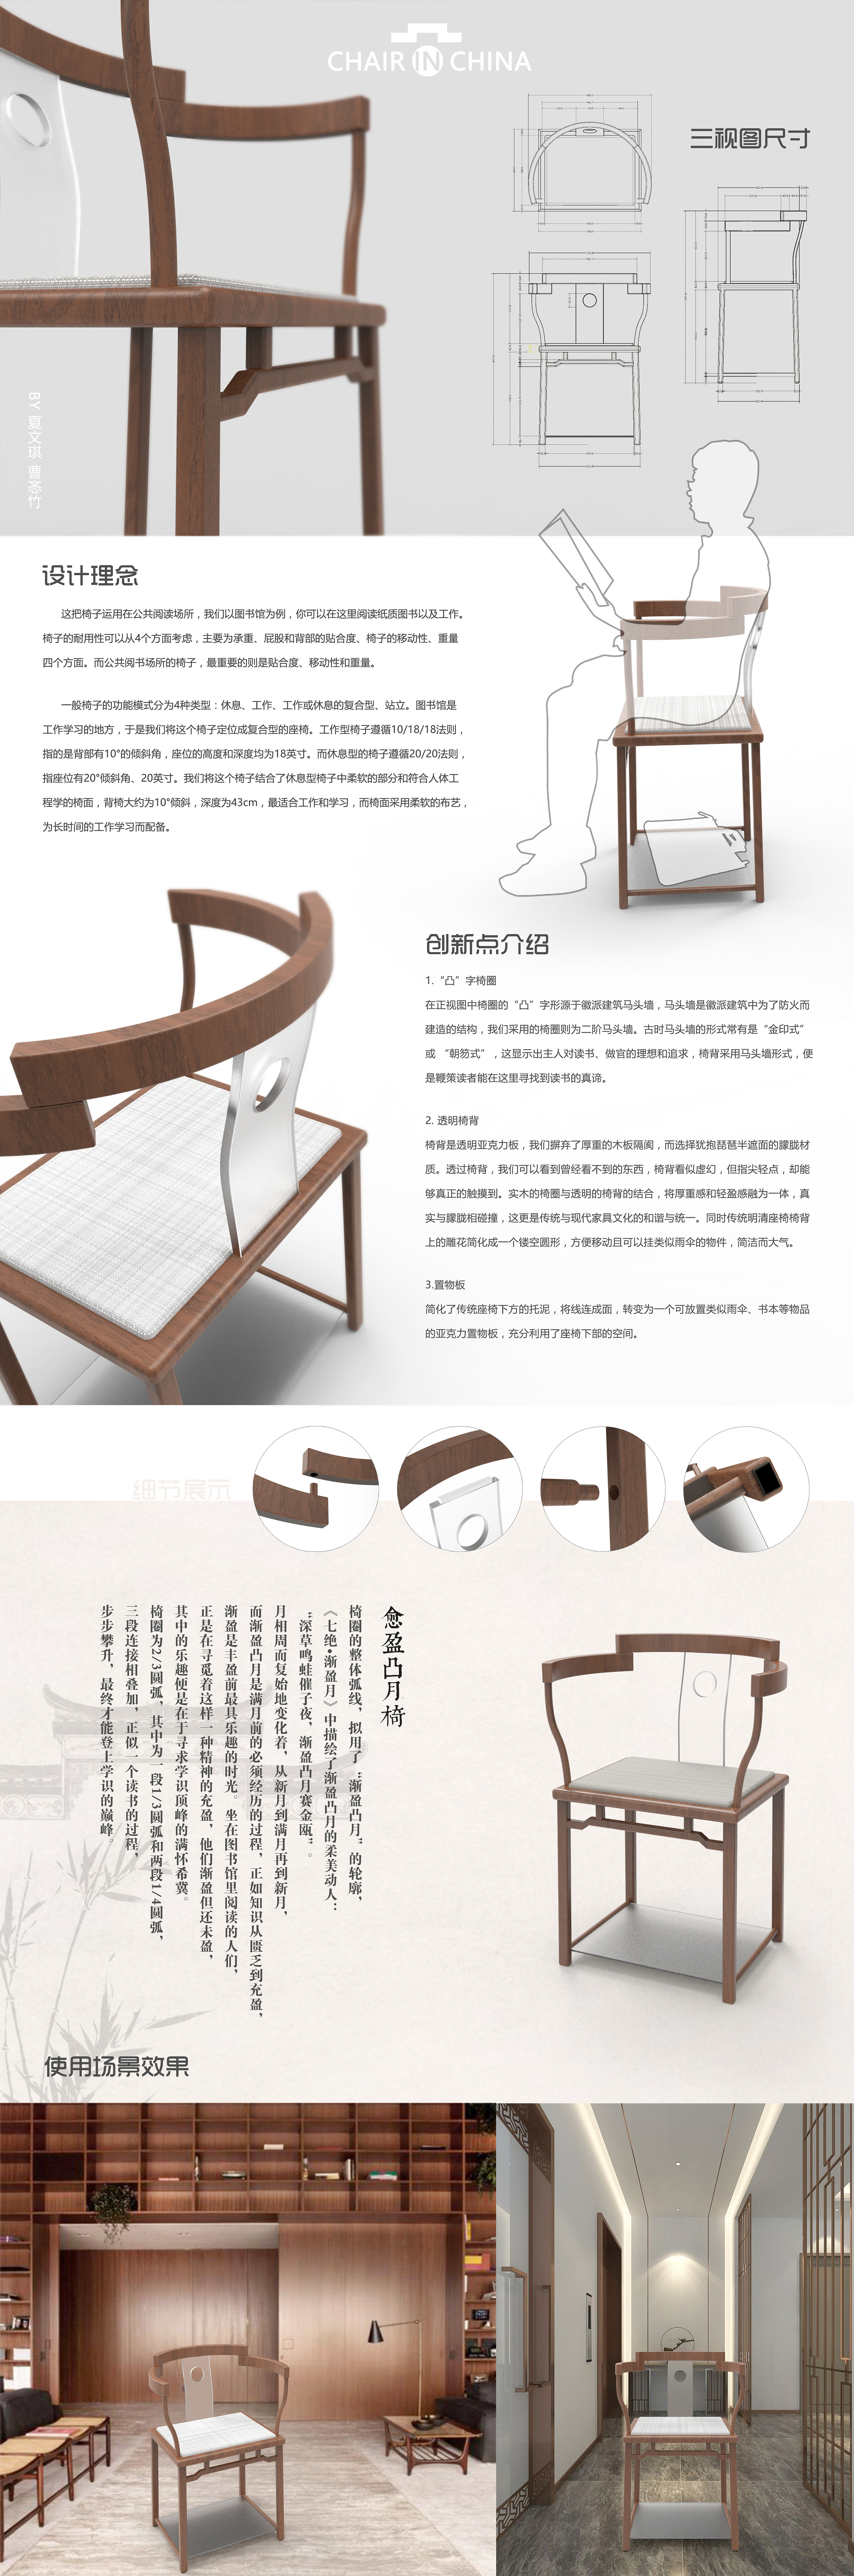 椅子效果图及设计原理图片